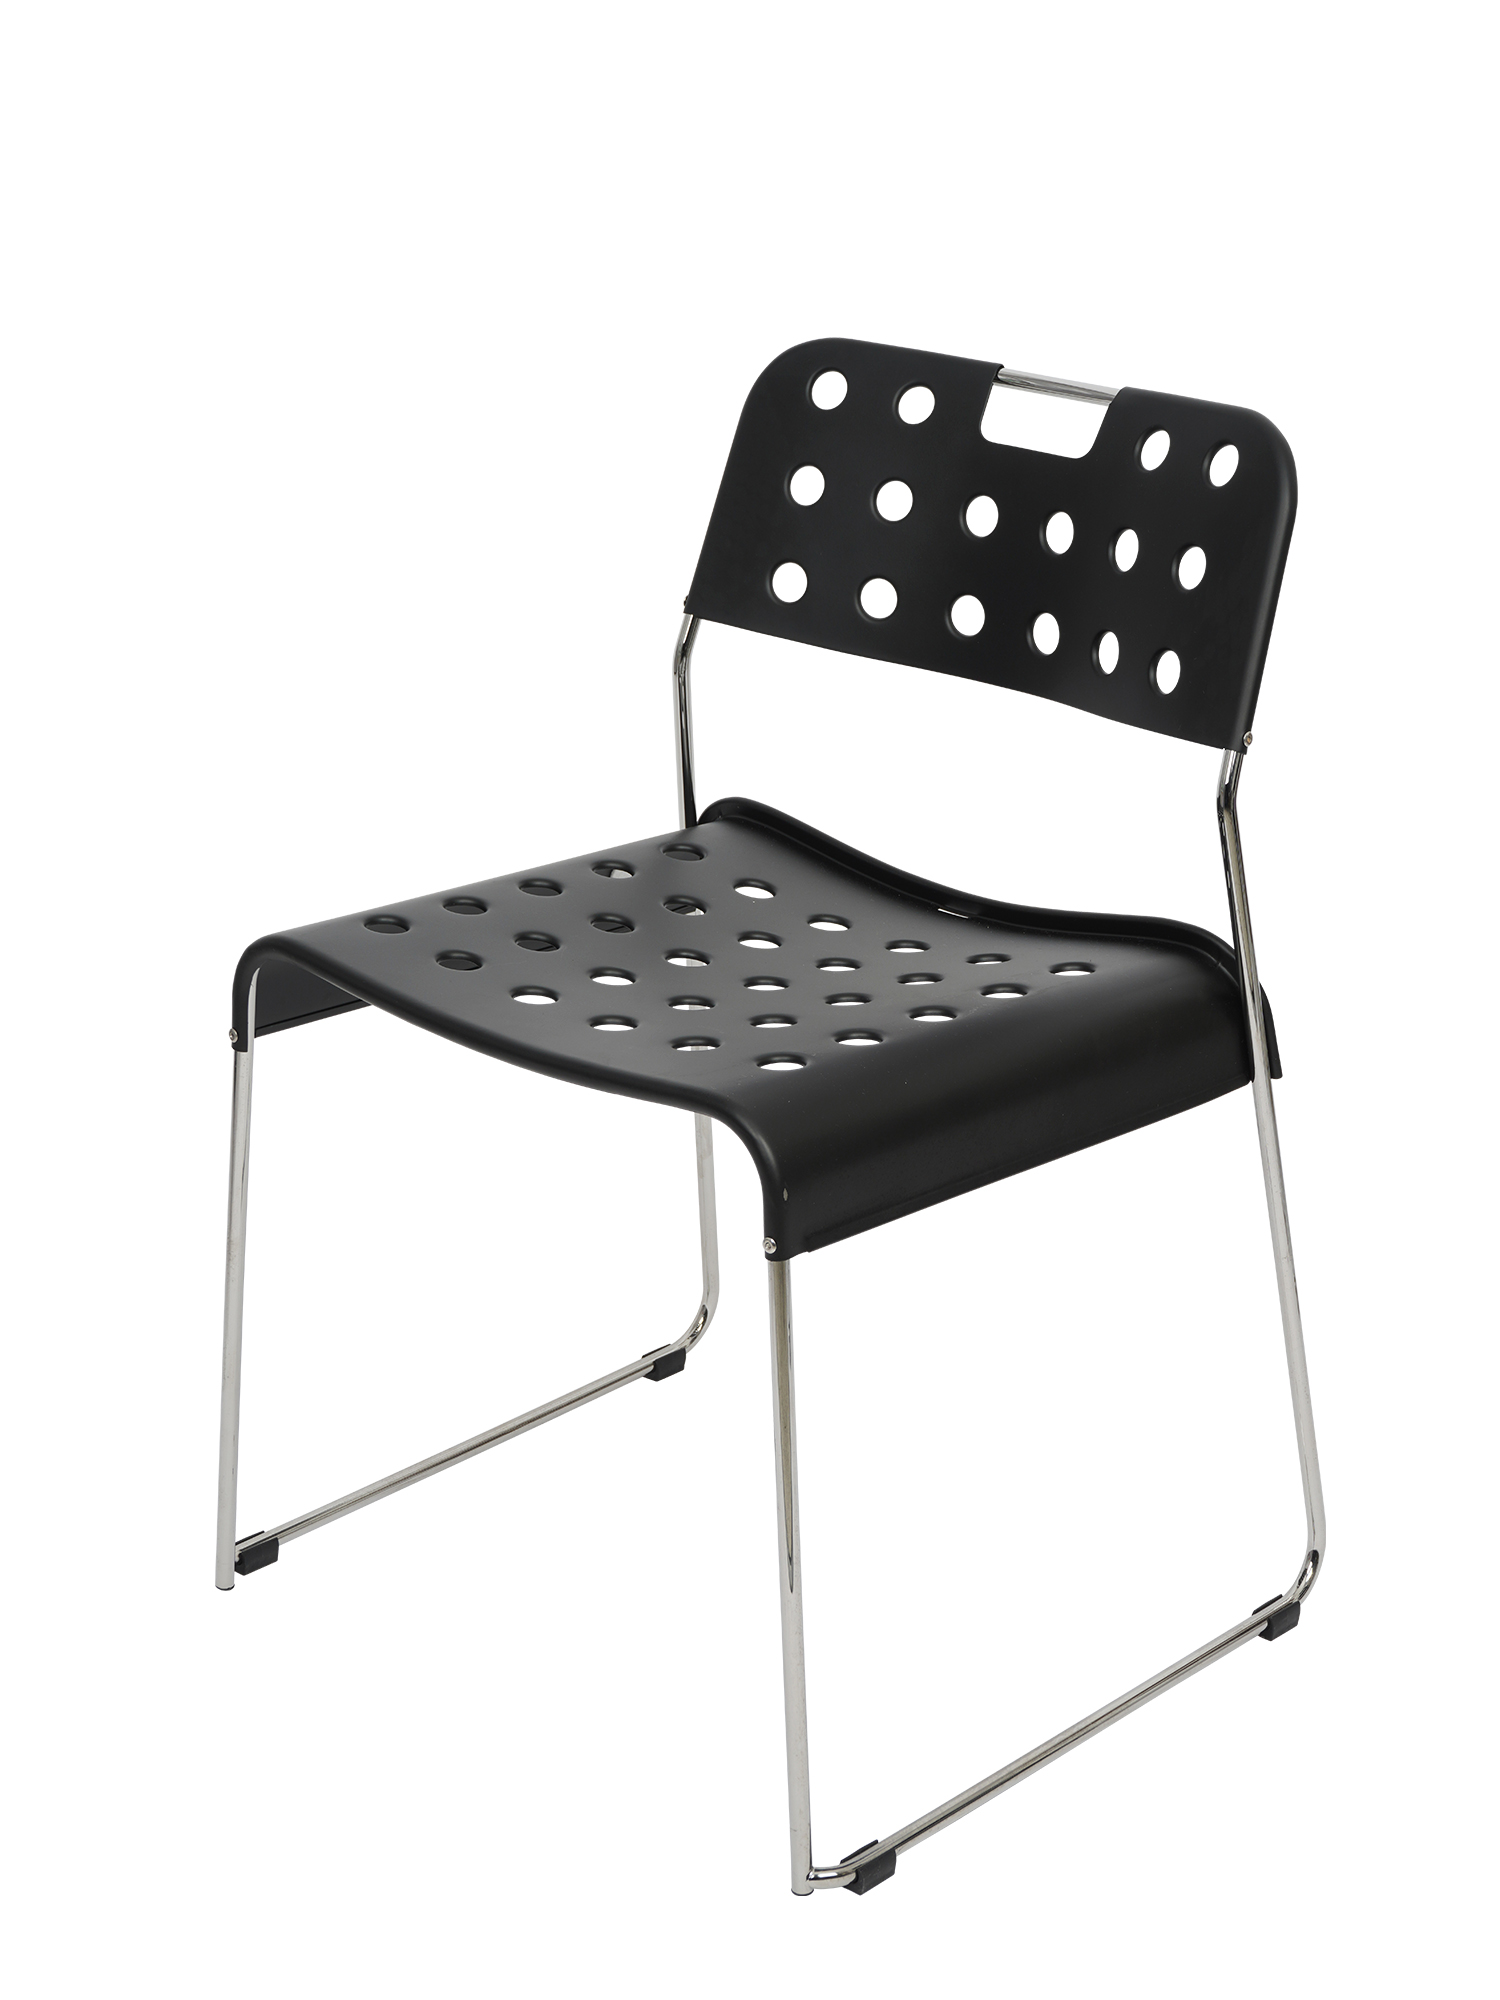 [OMK] Omkstak Side Chair Jet Black